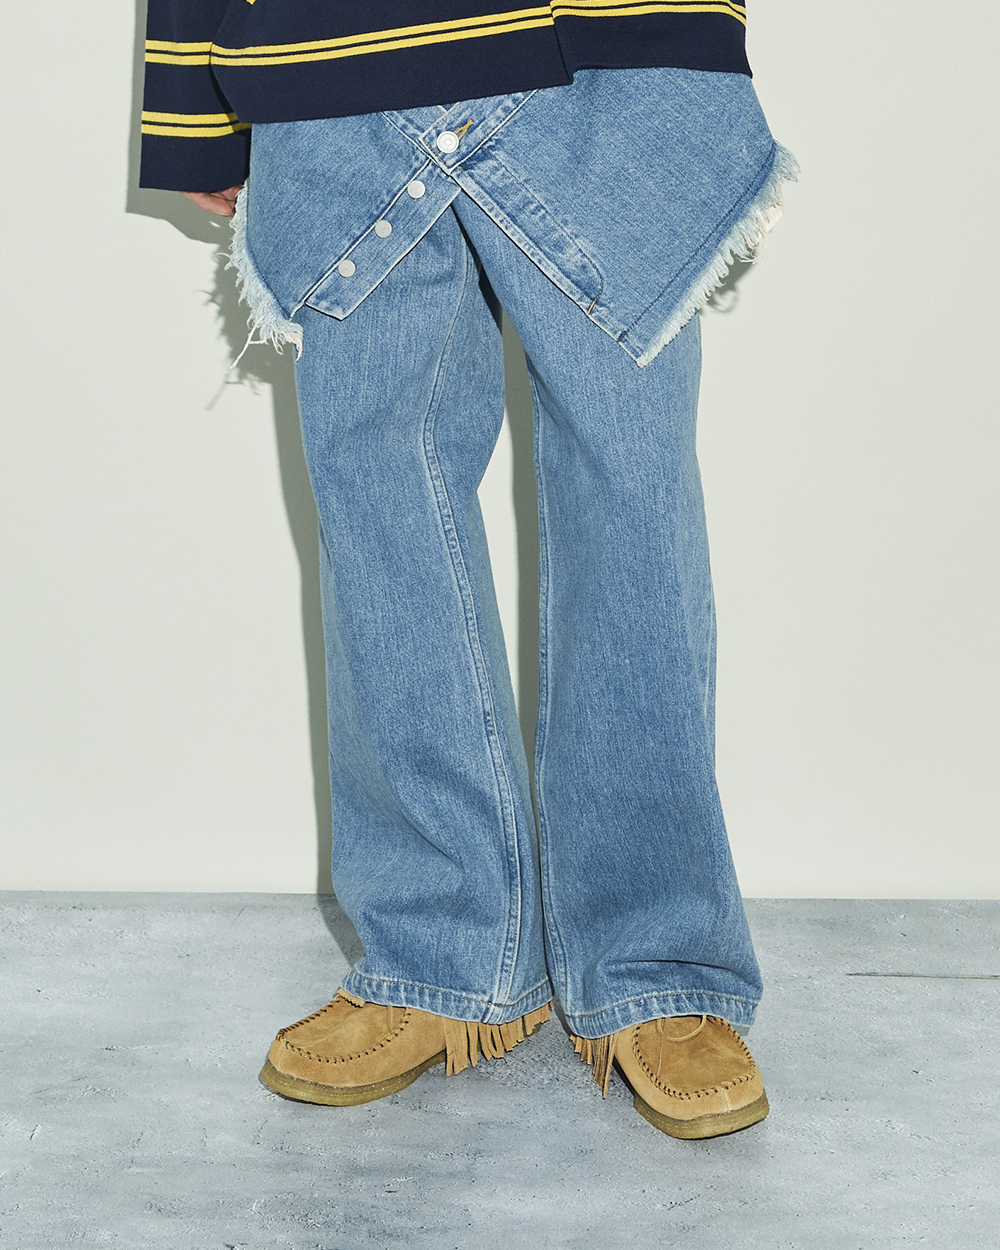 コトハヨコザワのレイヤードデニムパンツを穿いた男性モデル